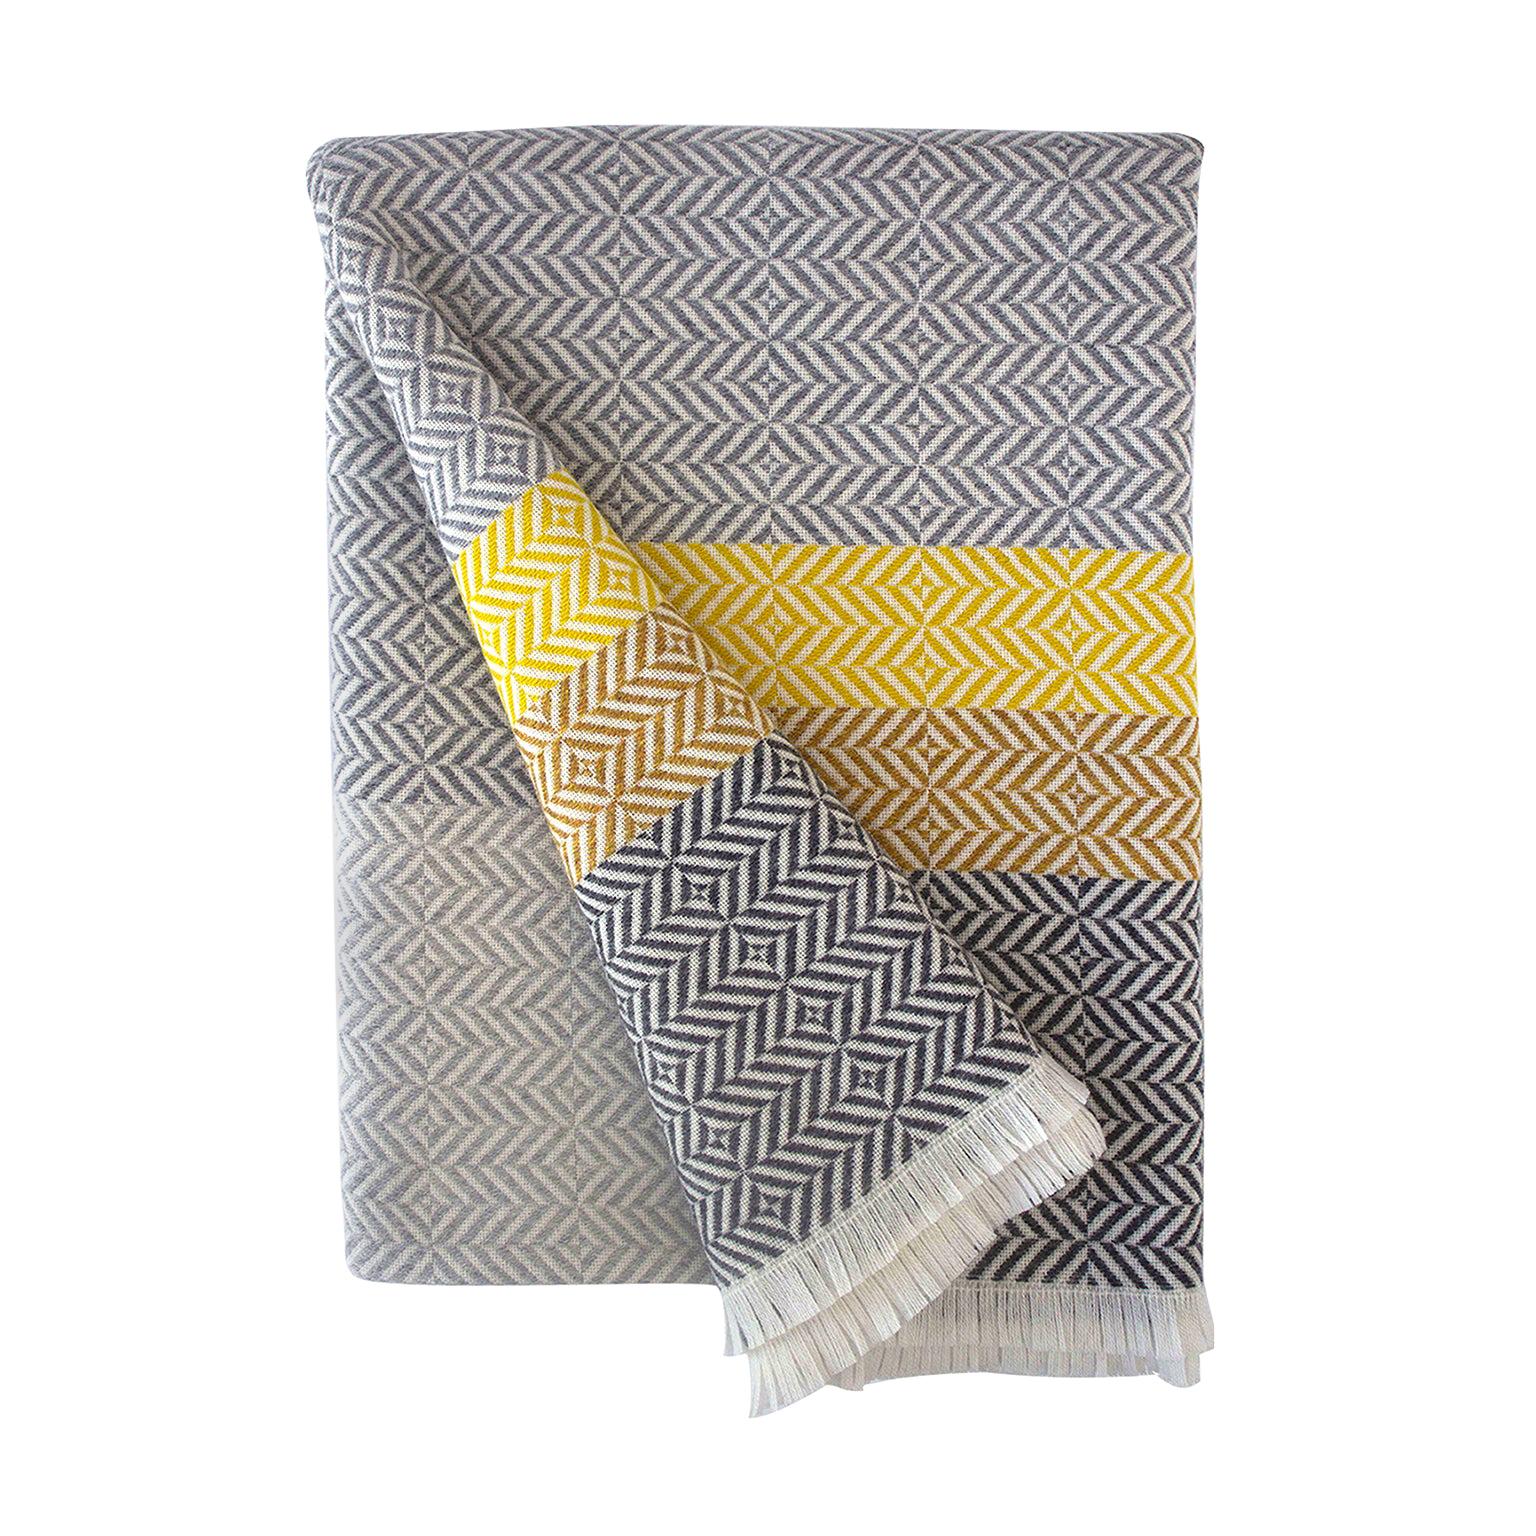 Block « Uccle » en laine mérinos tissée géométrique, jaune/gris Piccalilli